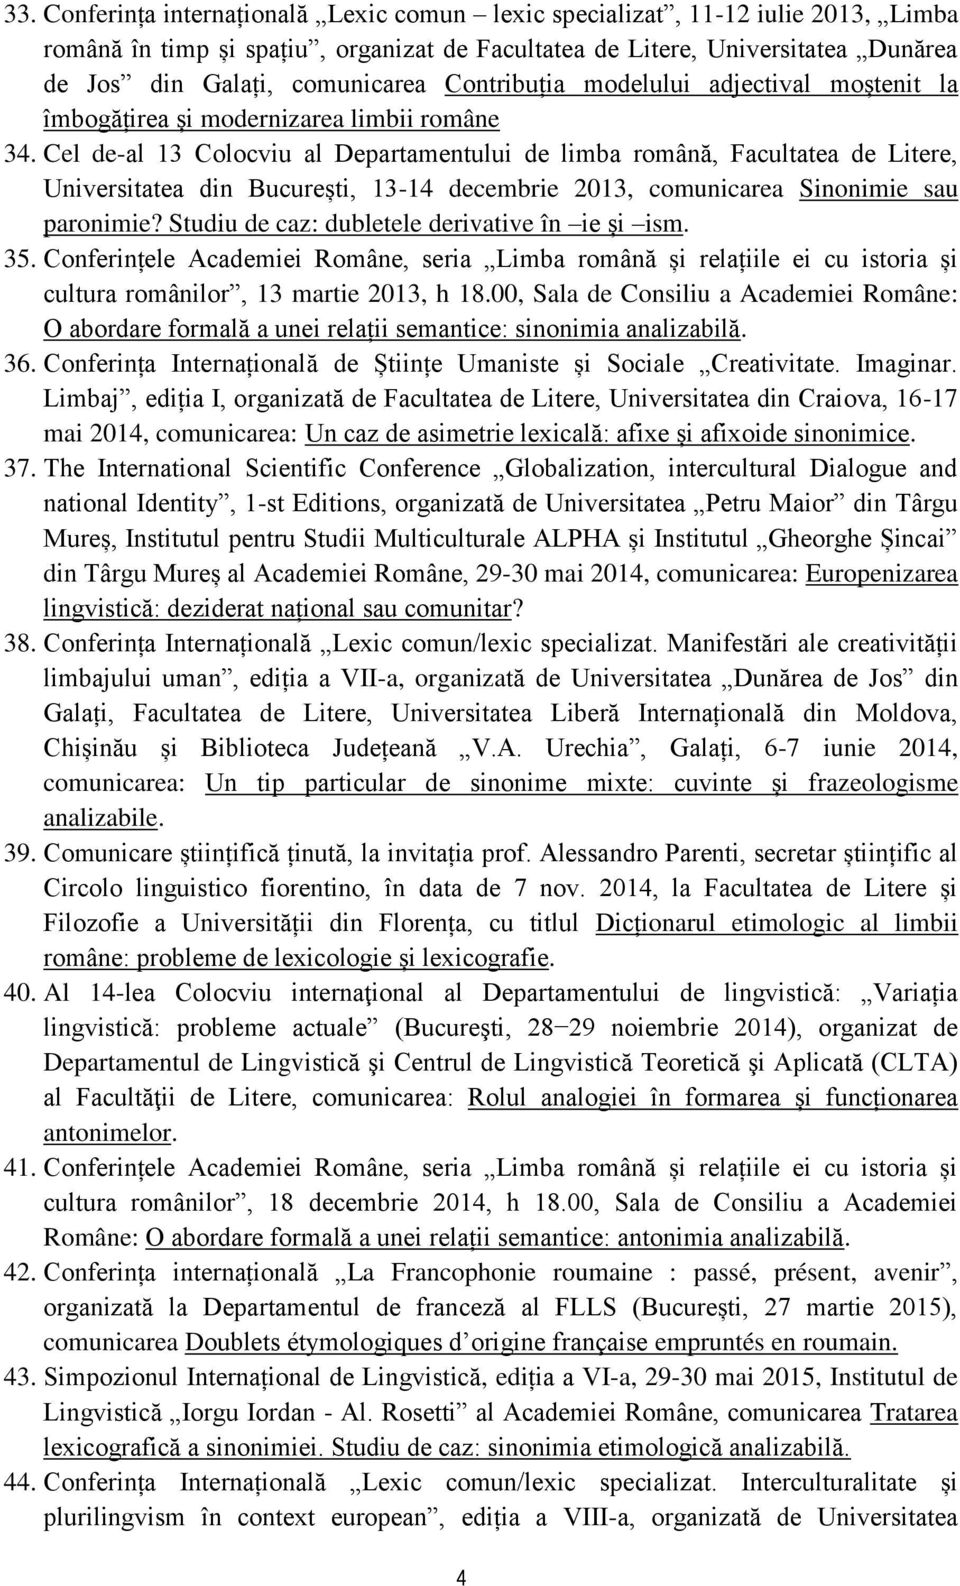 Cel de-al 13 Colocviu al Departamentului de limba română, Facultatea de Litere, Universitatea din București, 13-14 decembrie 2013, comunicarea Sinonimie sau paronimie?